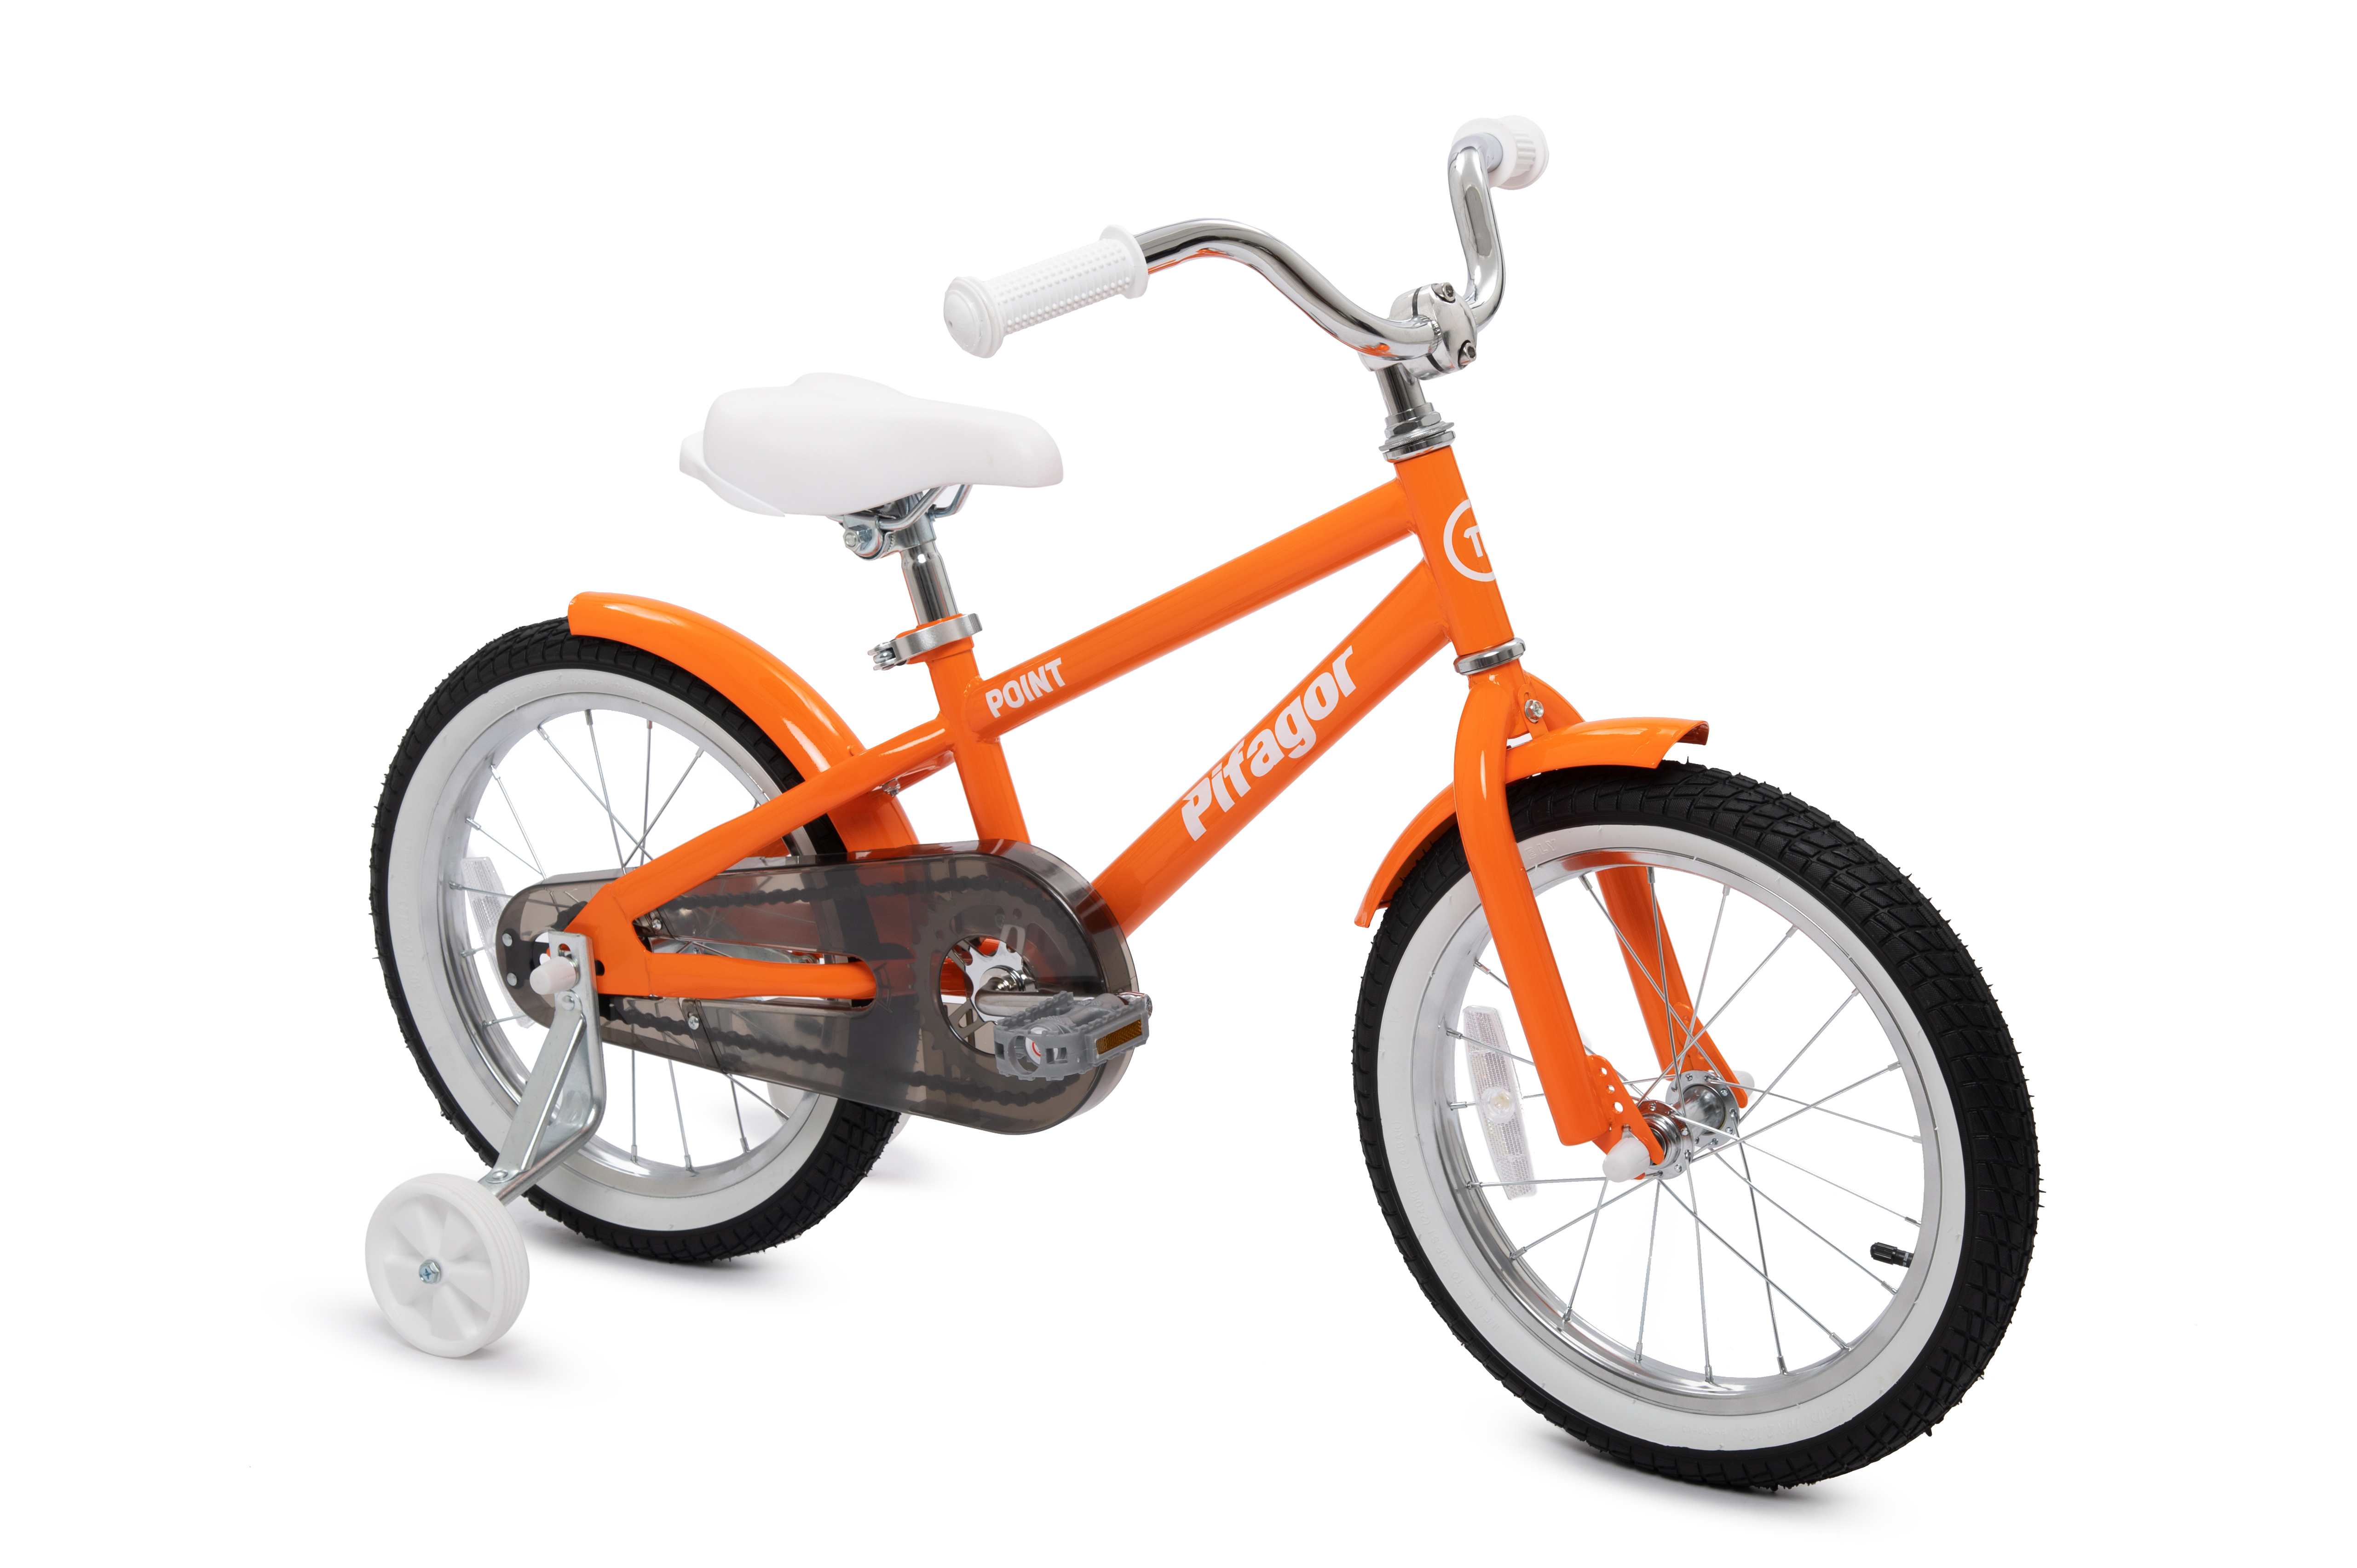 Детский велосипед Pifagor Point оранжевый белый PR16PTOL стальной рамой